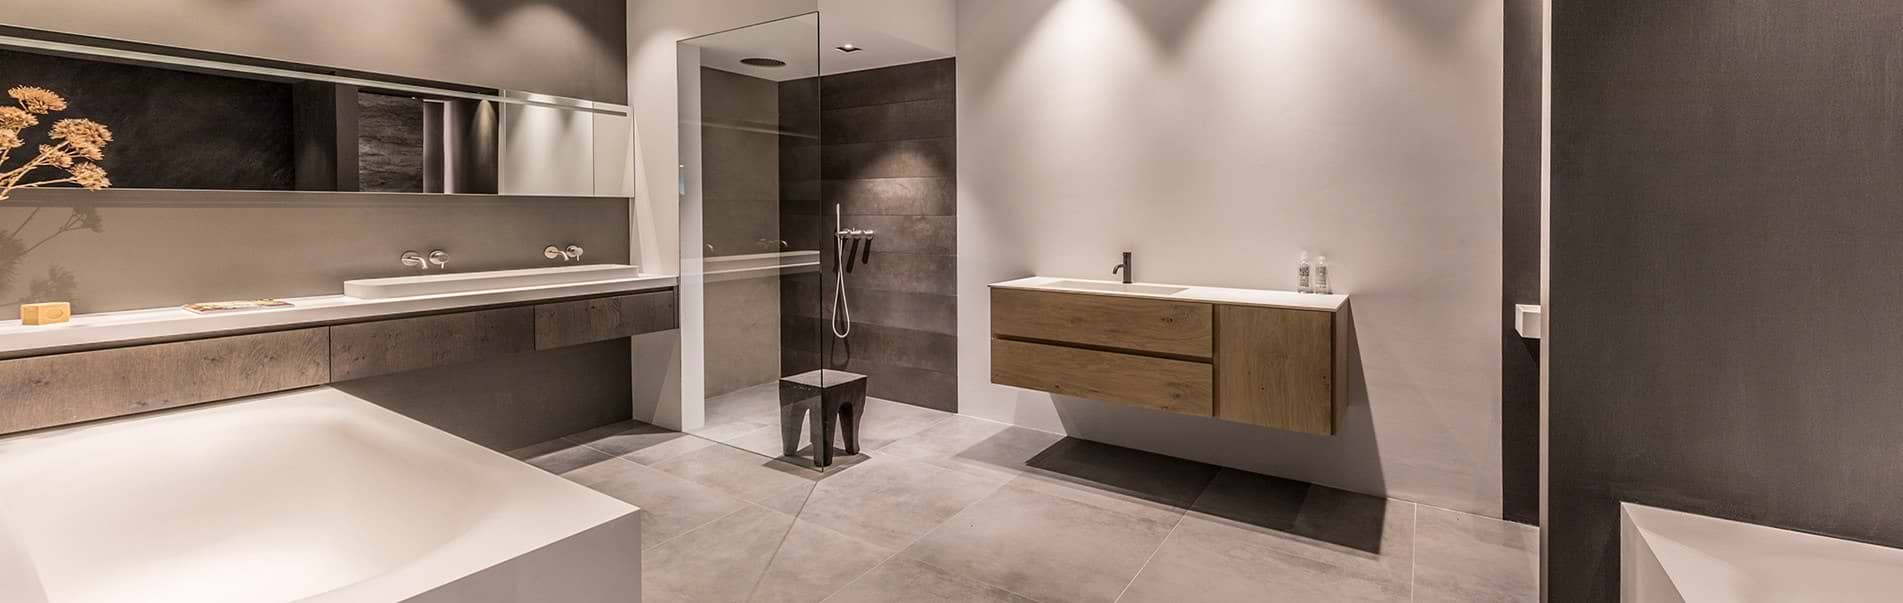 Badkamer inspiratie bij B DUTCH. Laat onze ontwerpers meedenken met uw badkamer ideeën en badkamer ontwerpen.